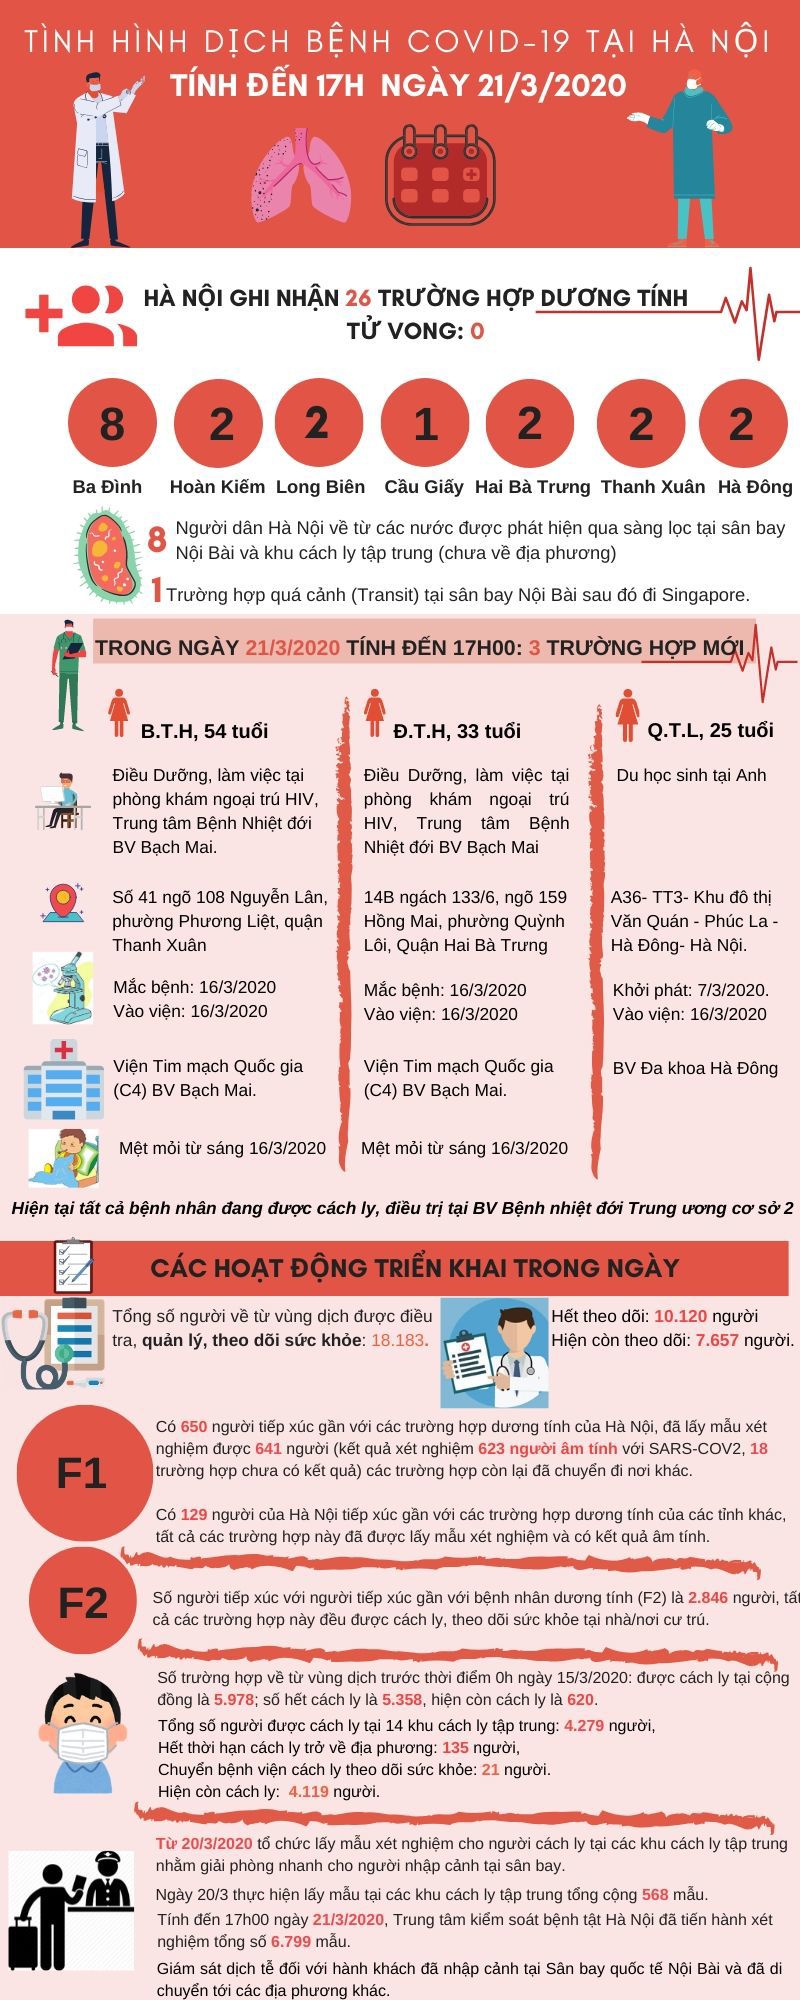 [Infographic] Cập nhật tình hình dịch bệnh Covid-19 tại Hà Nội tới 17h ngày 21/3/2020 - Ảnh 1